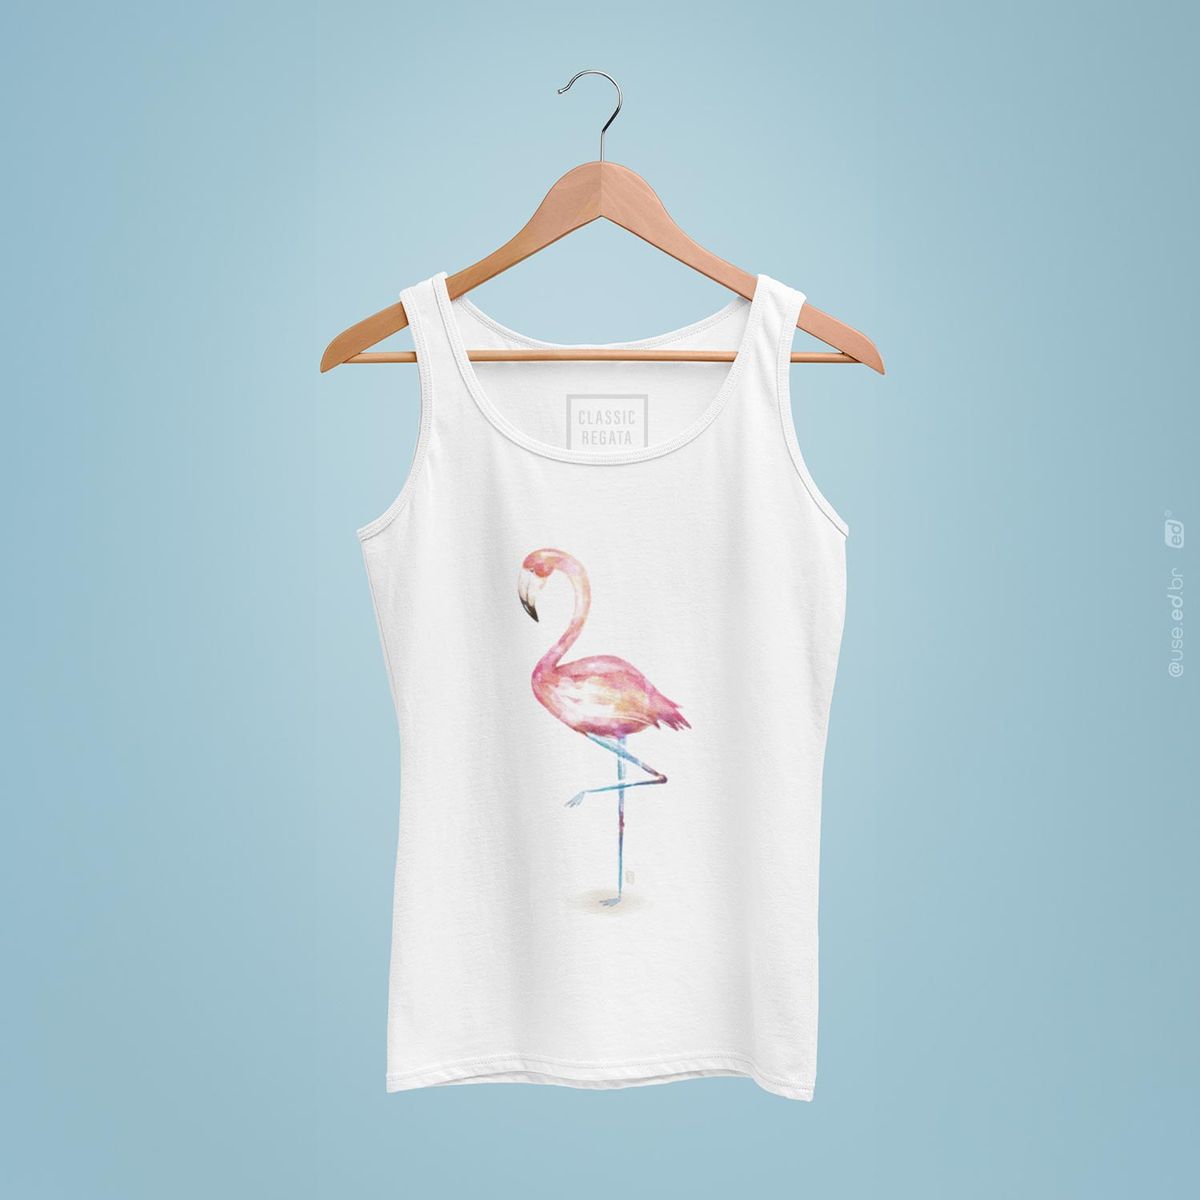 Nome do produto: Flamingo - Regata Estampada Classic Branca